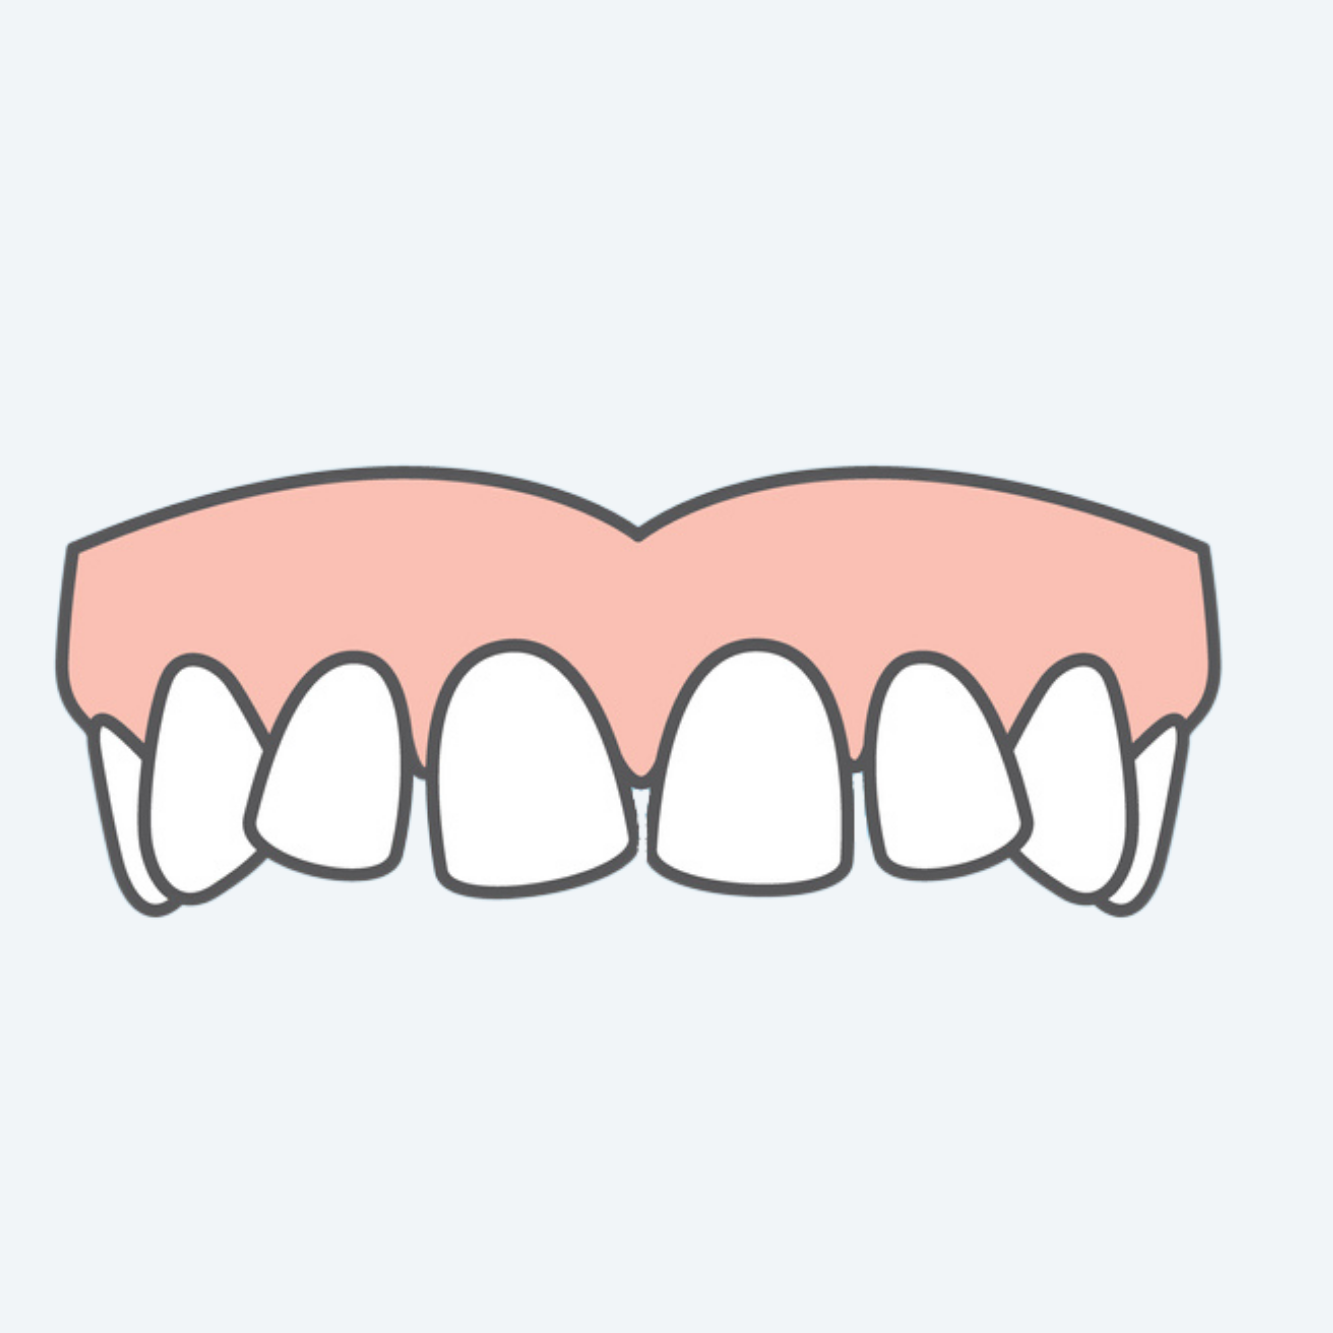 OSP - Crooked Teeth